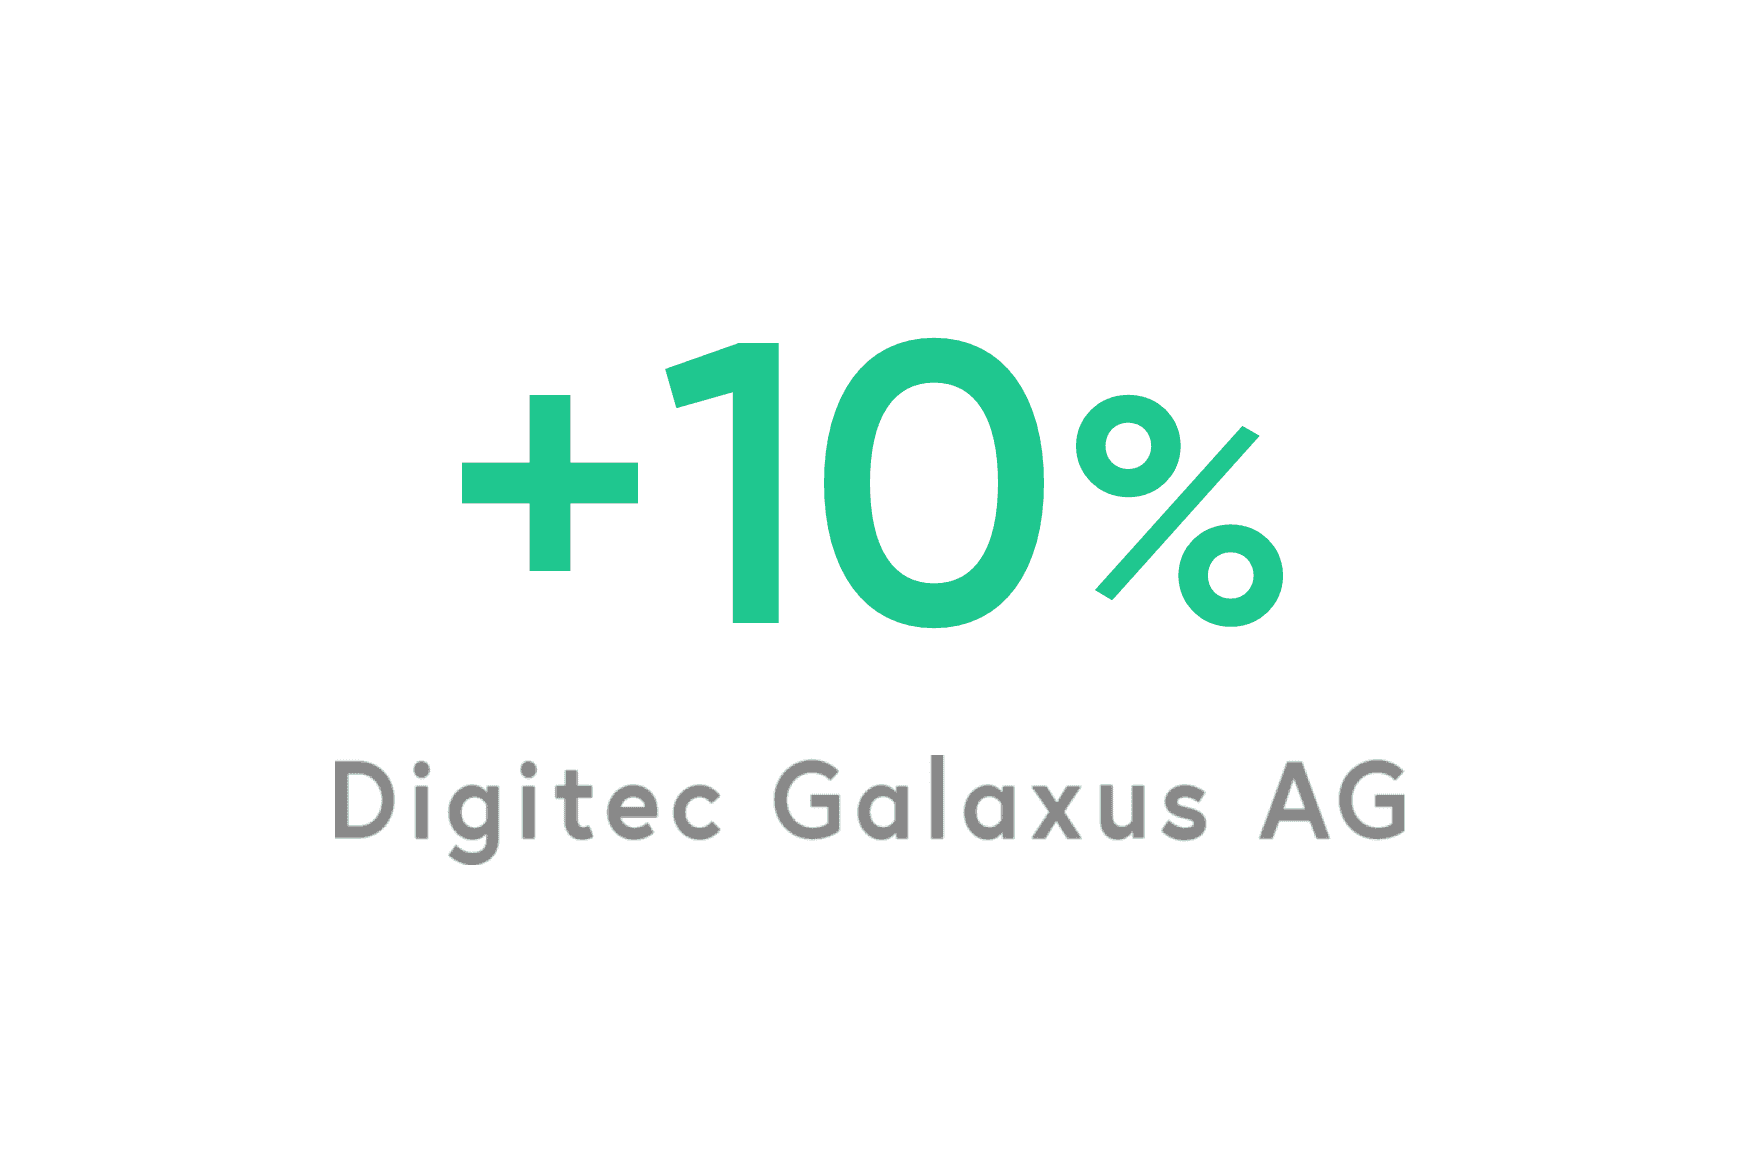 Digitec Galaxus: 10% de melhoria no moral dos agentes